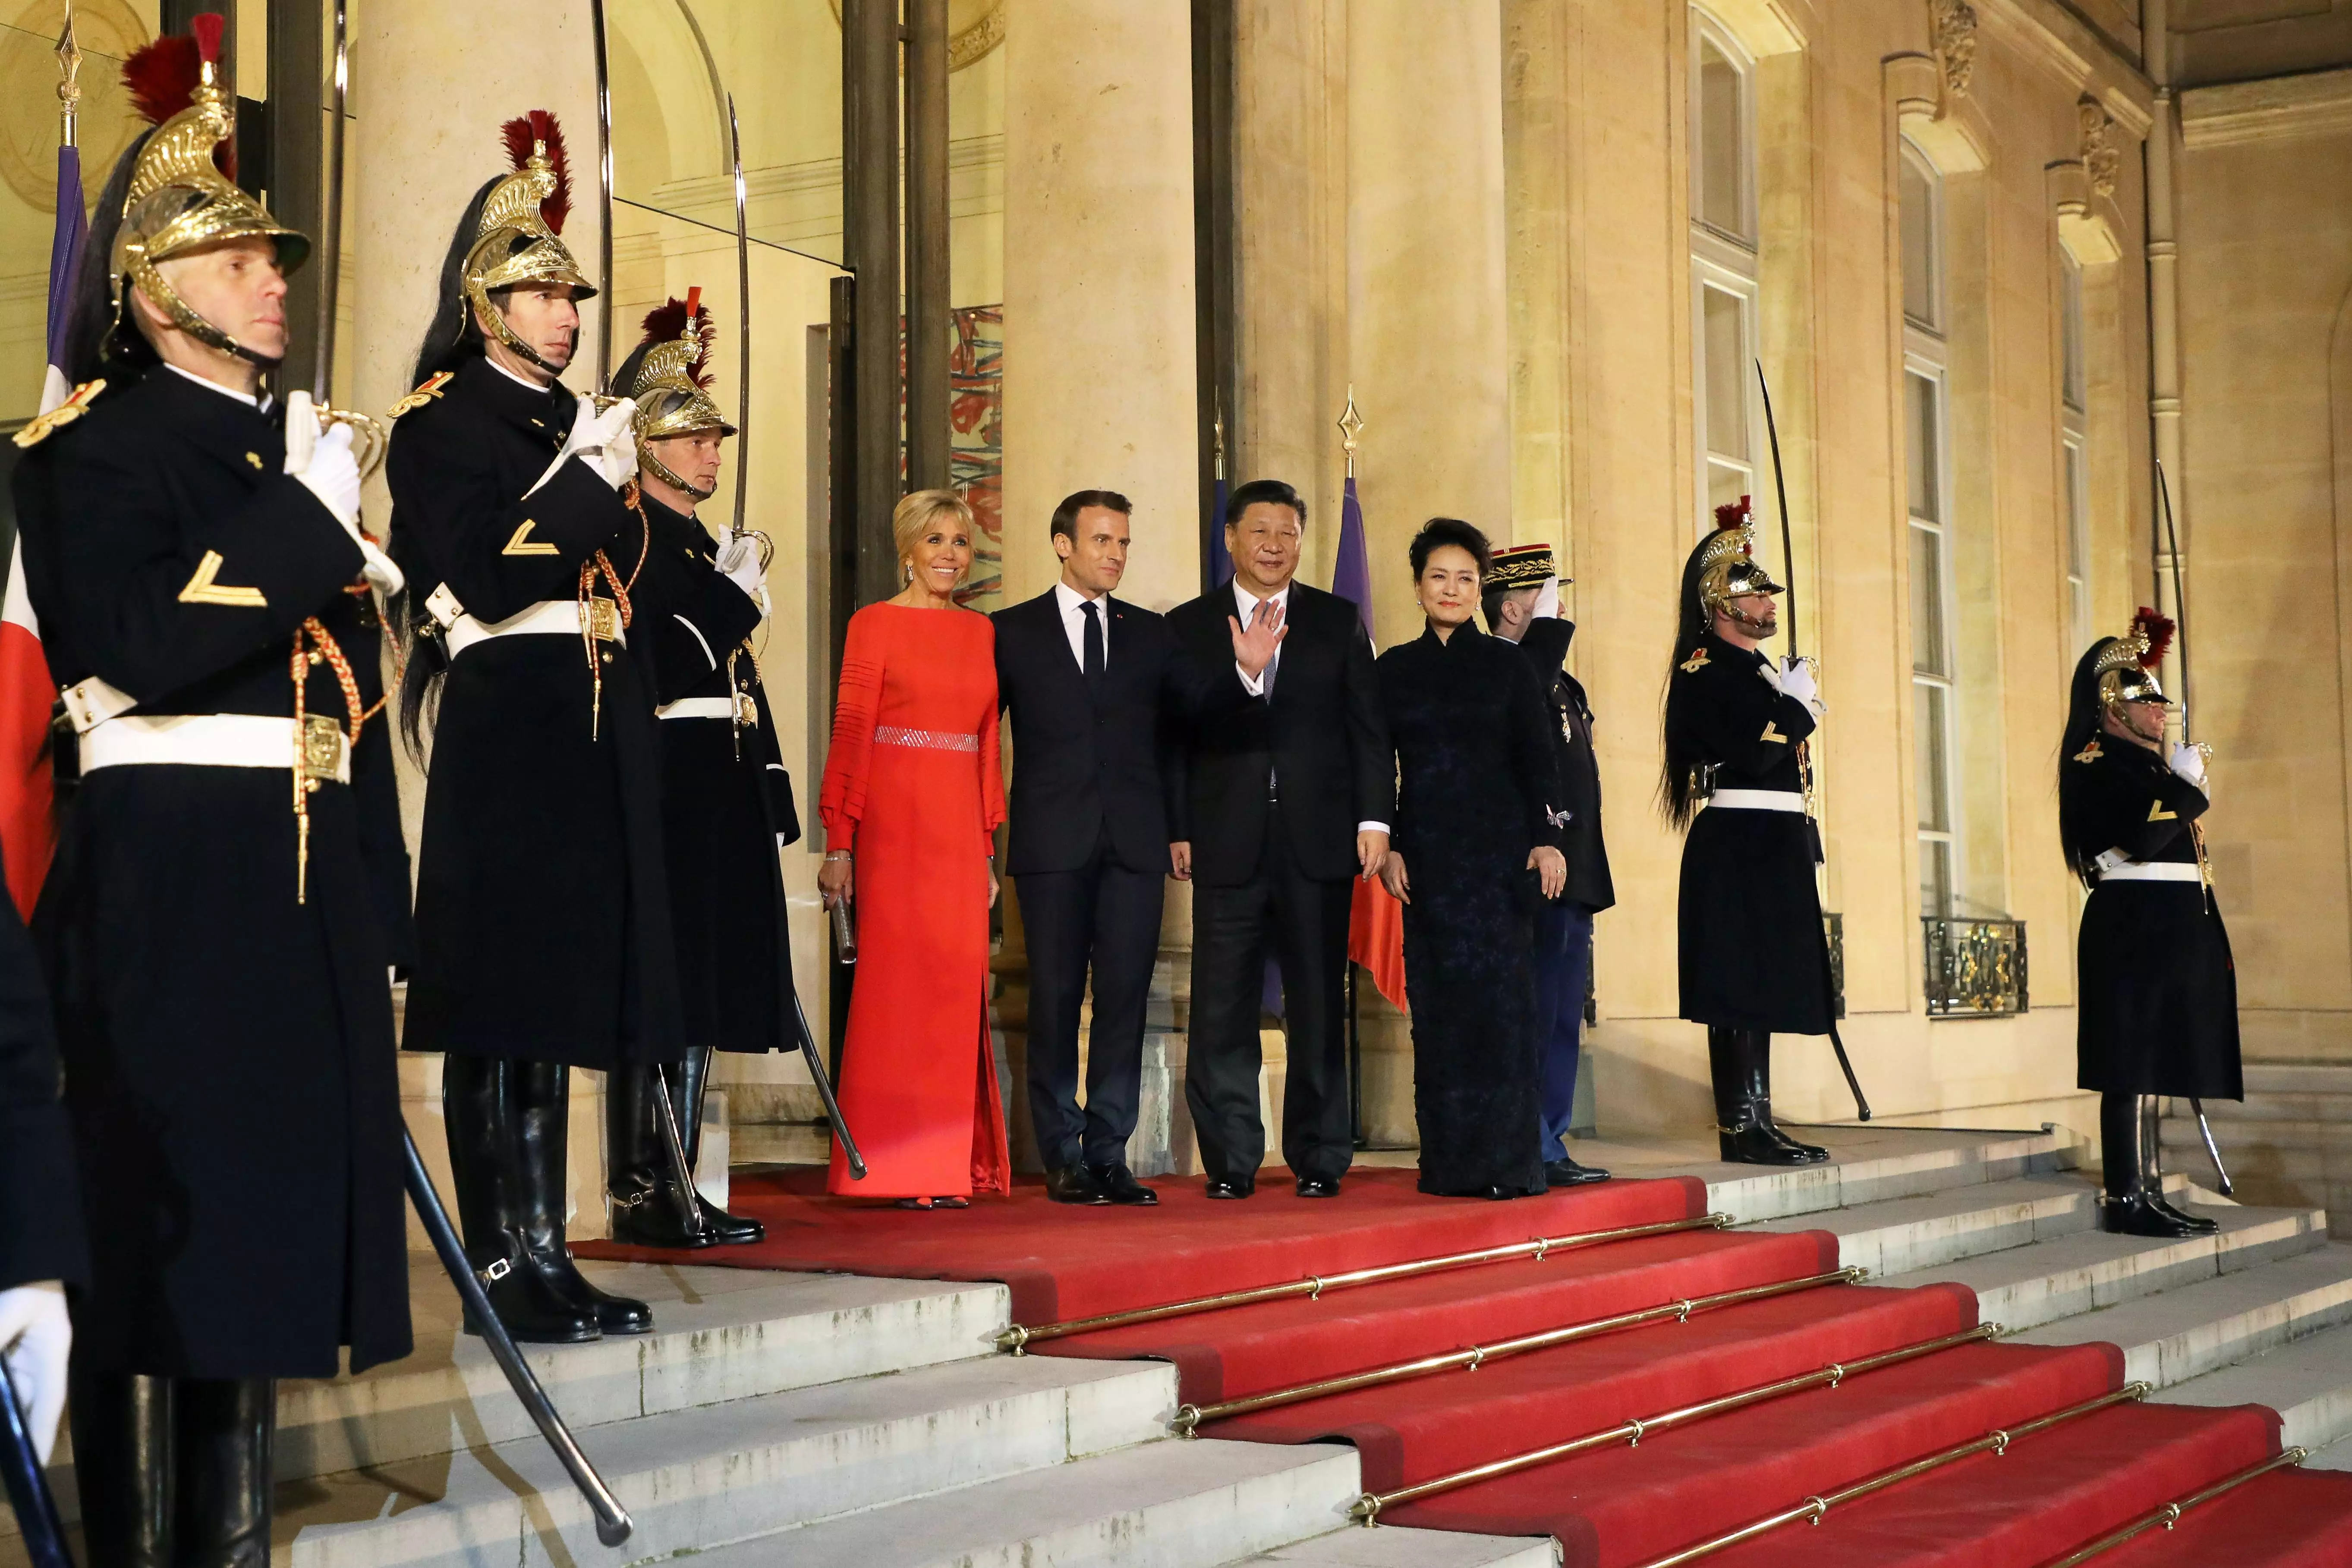 Перша леді Франції Бріжит Макрон зі своїм чоловіком і президентом Еммануелем Макроном